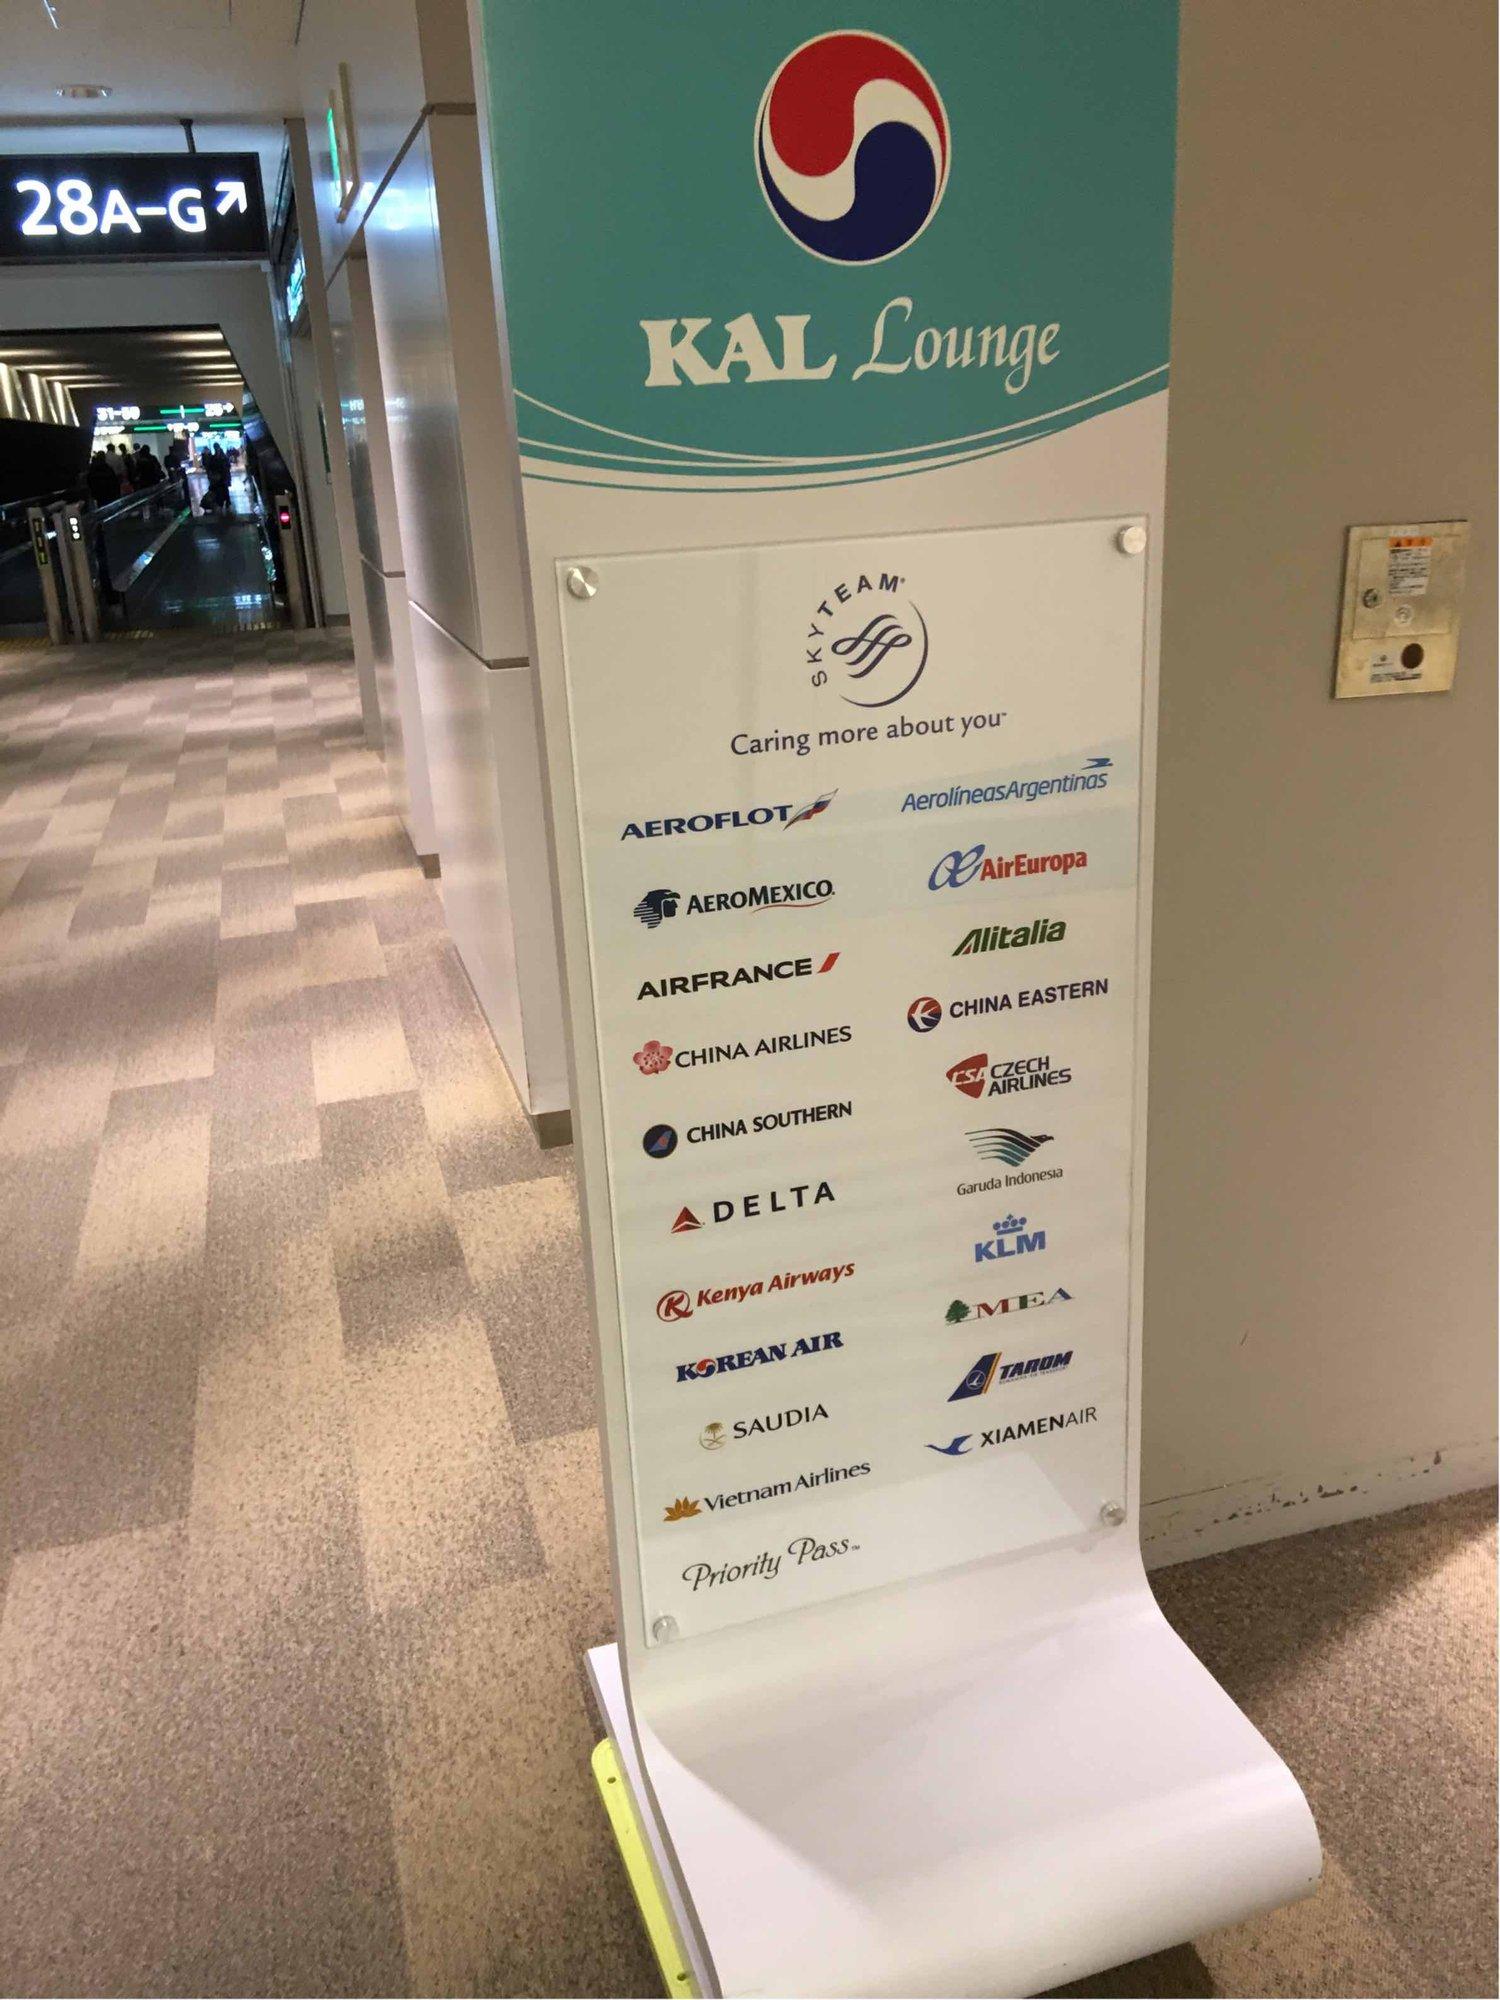 Korean Air KAL Lounge image 11 of 58